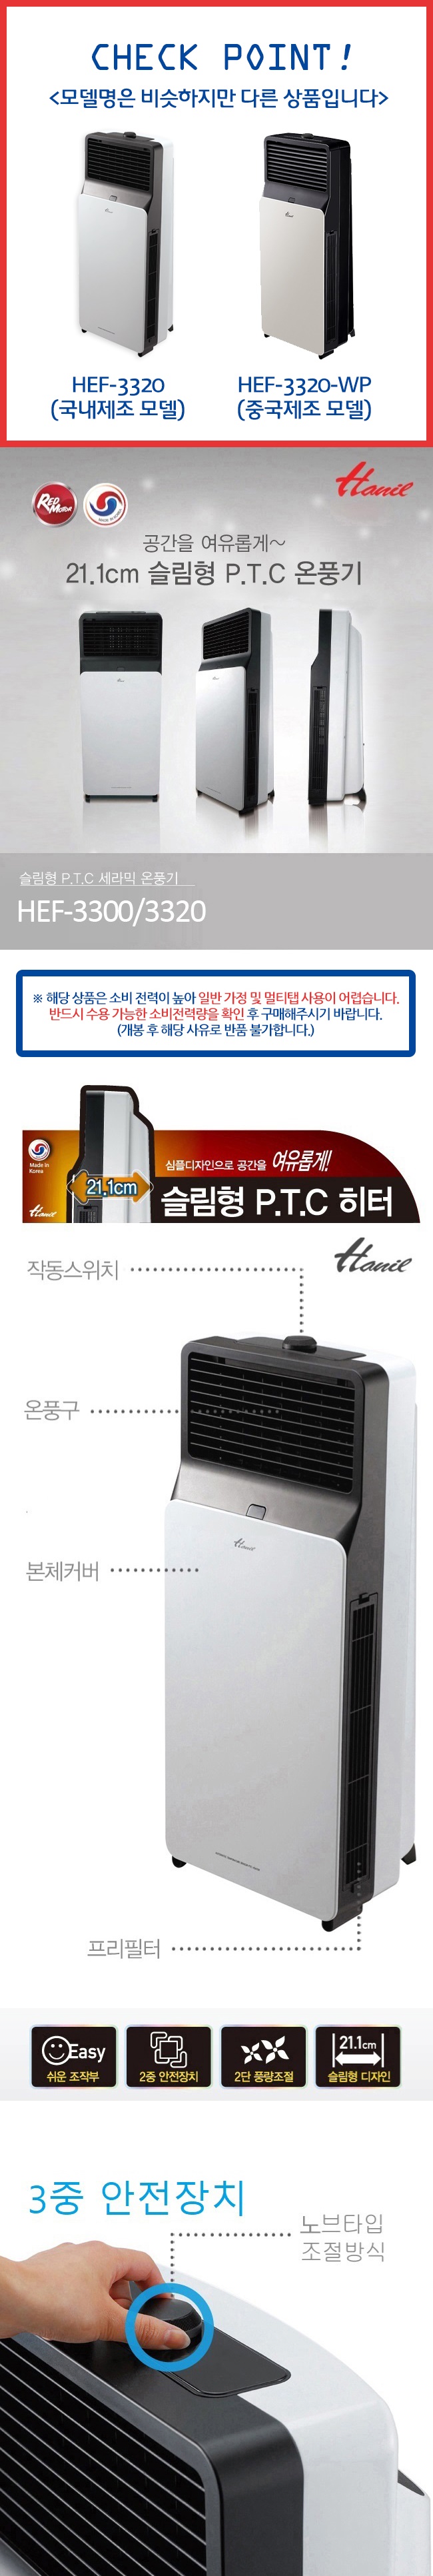 온풍기,히터,전기히터,전기온풍기,겨울가전/